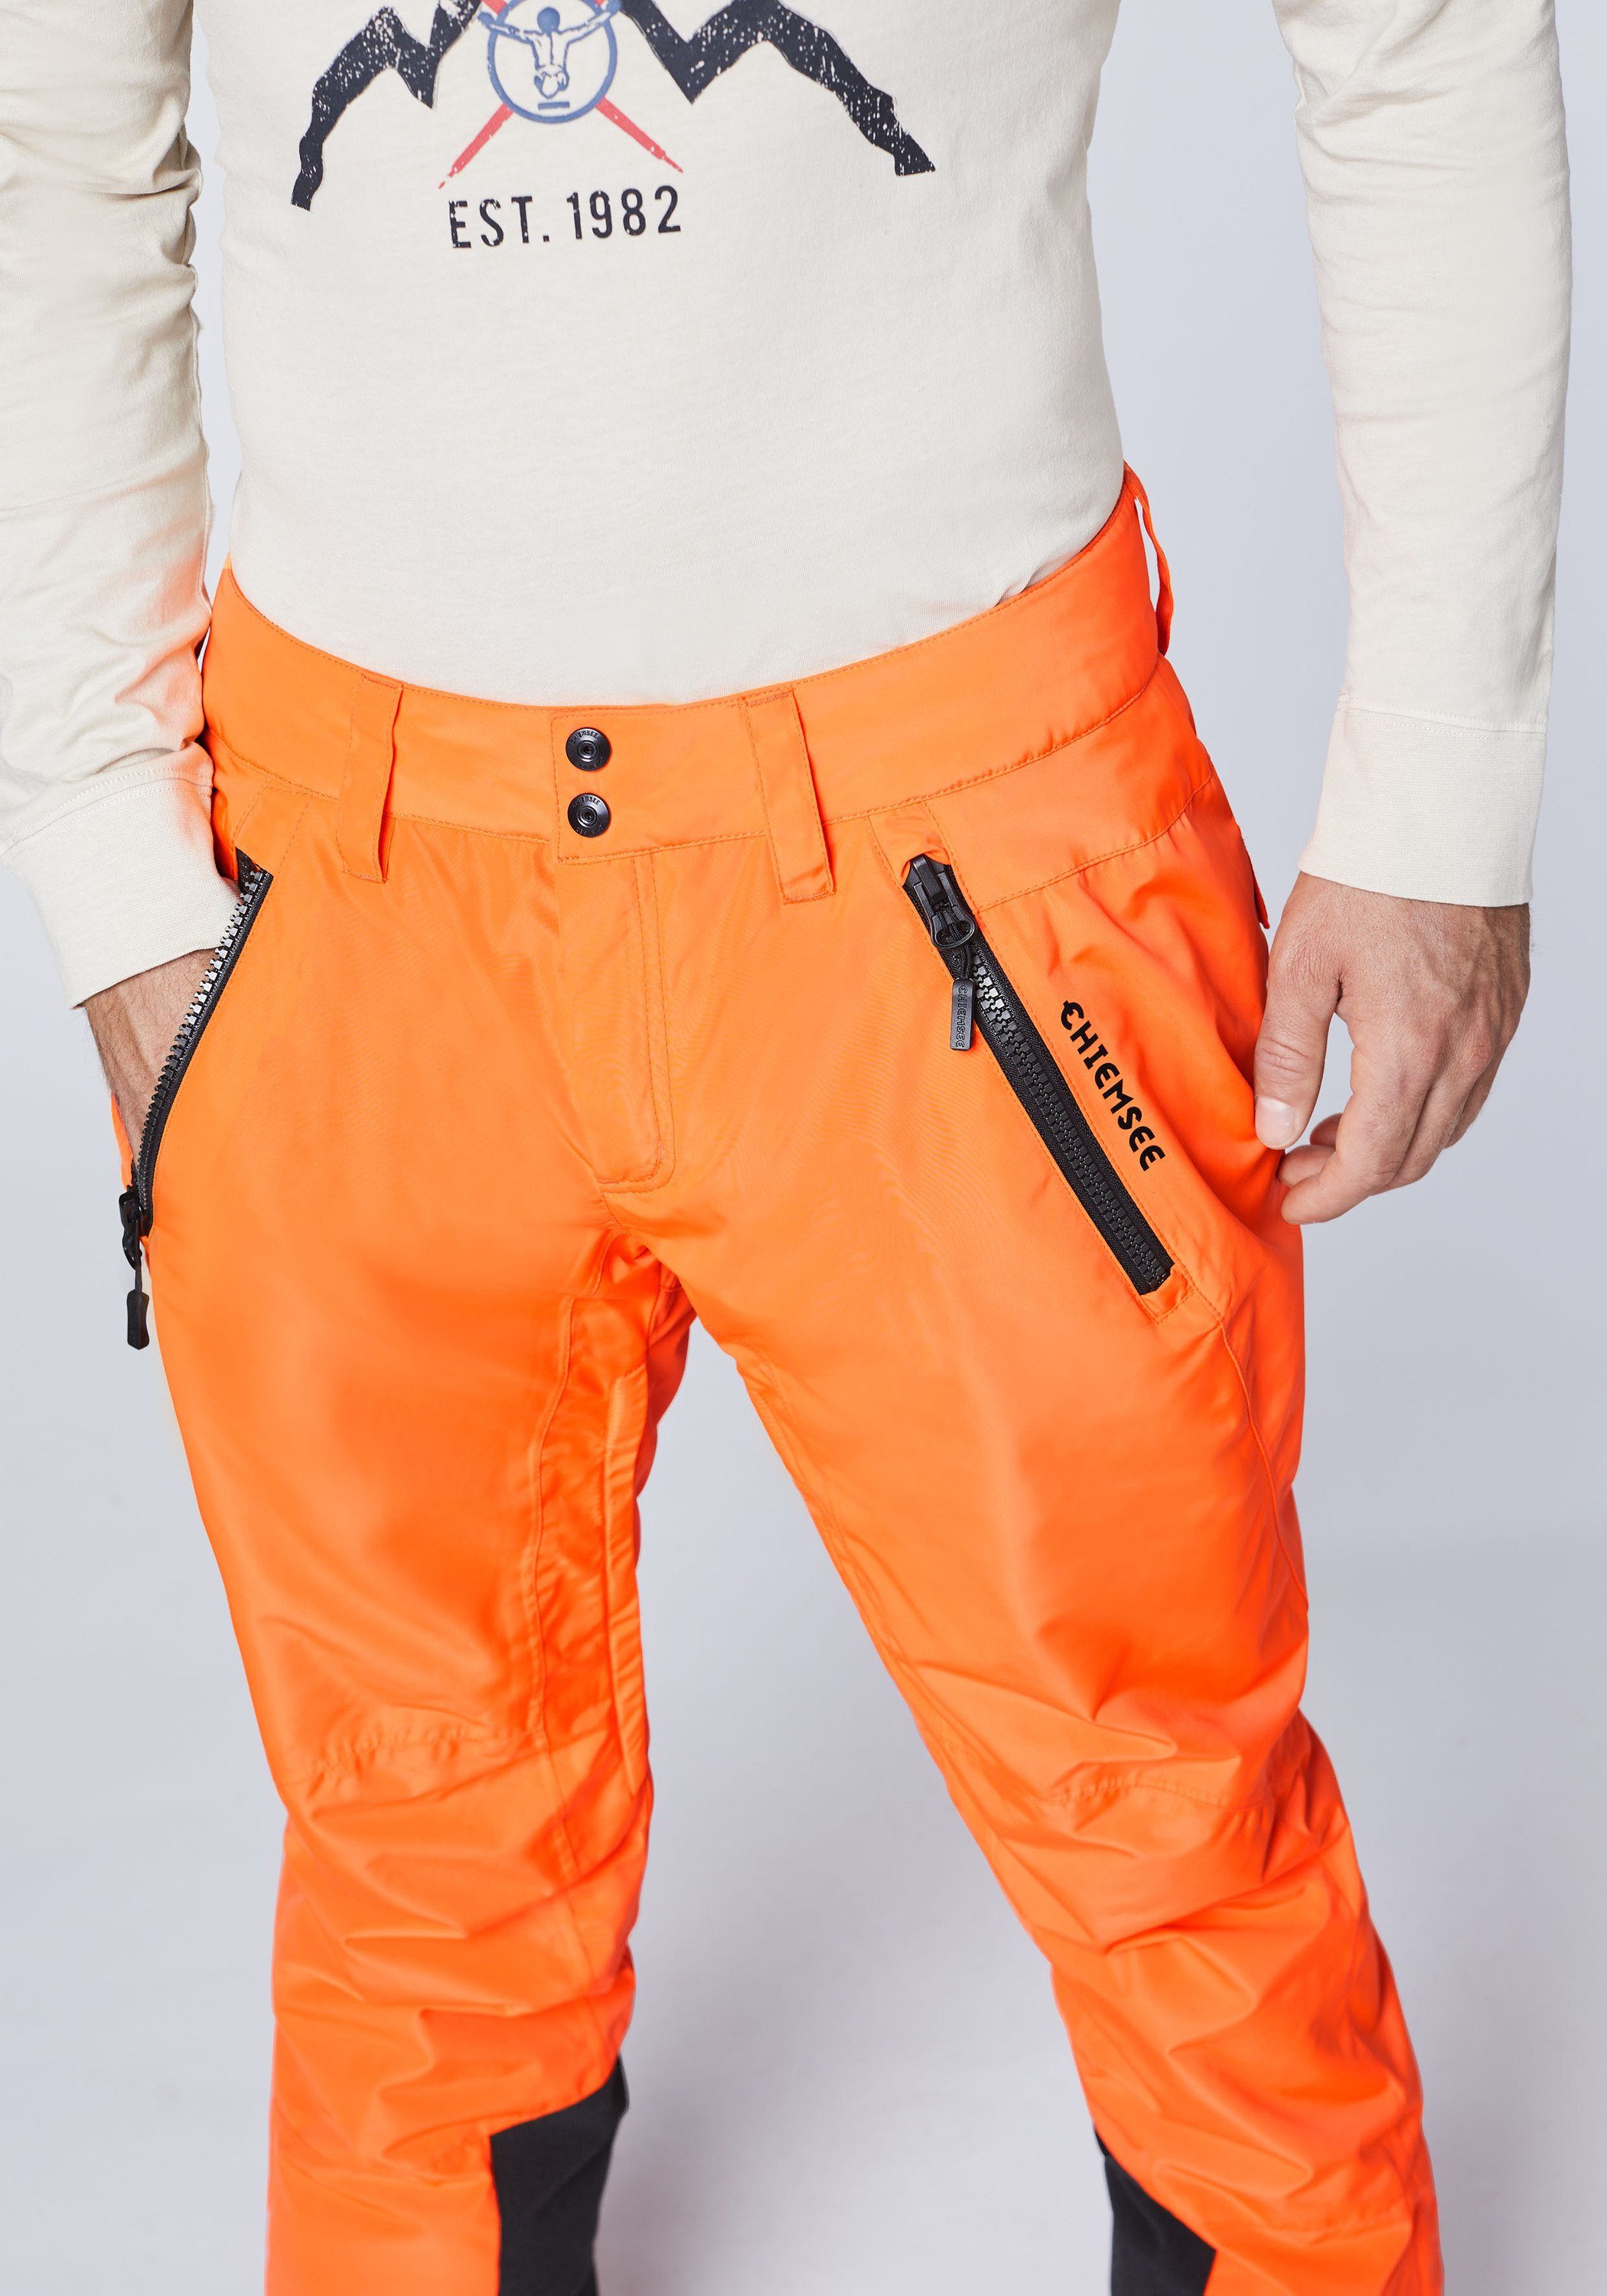 Chiemsee Sporthose Skihose 1 orange Schneefang mit